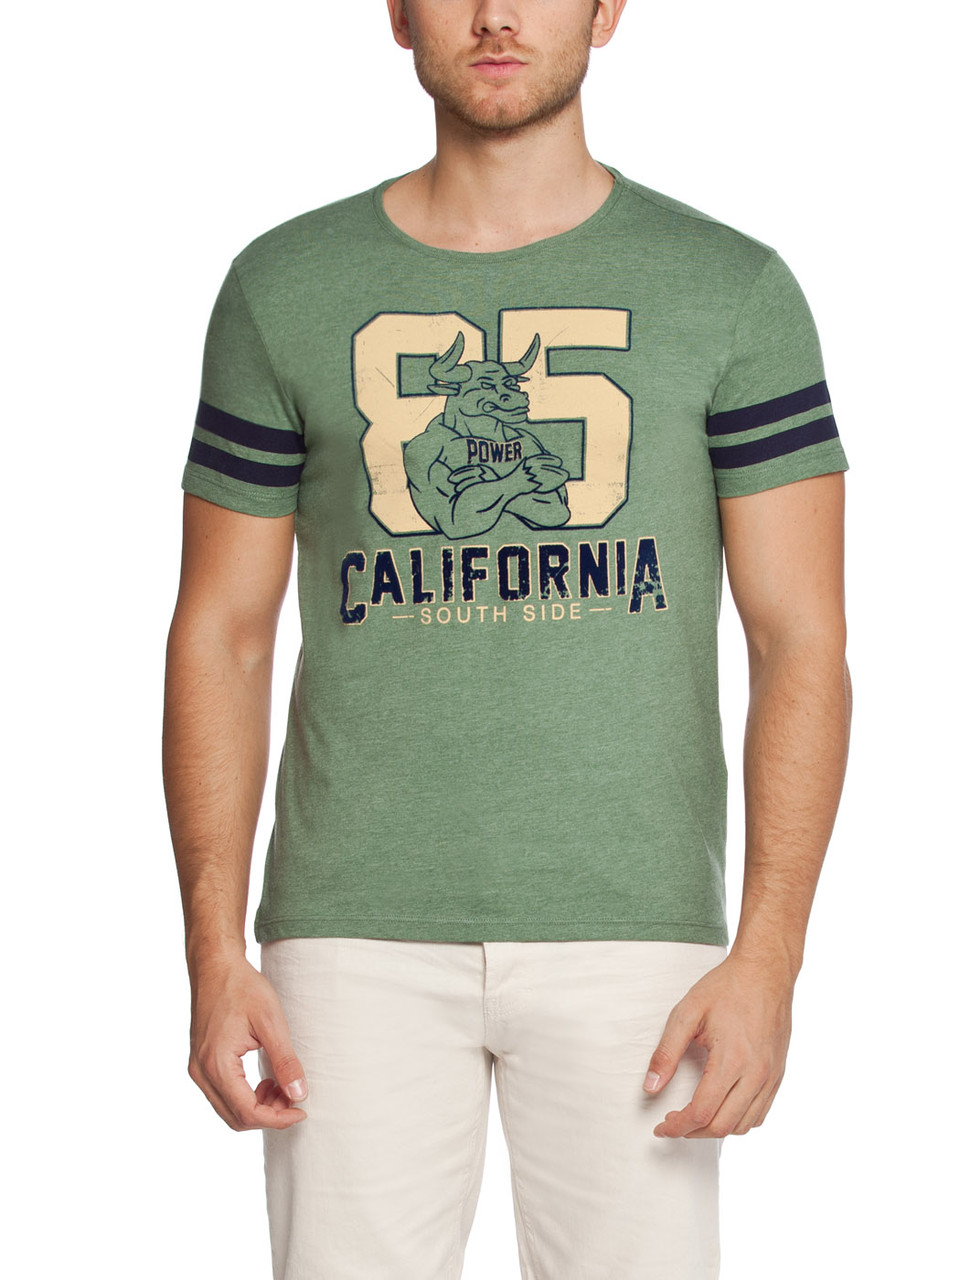 Чоловіча футболка LC Waikiki світло-зеленого кольору з написом 85 California, фото 1